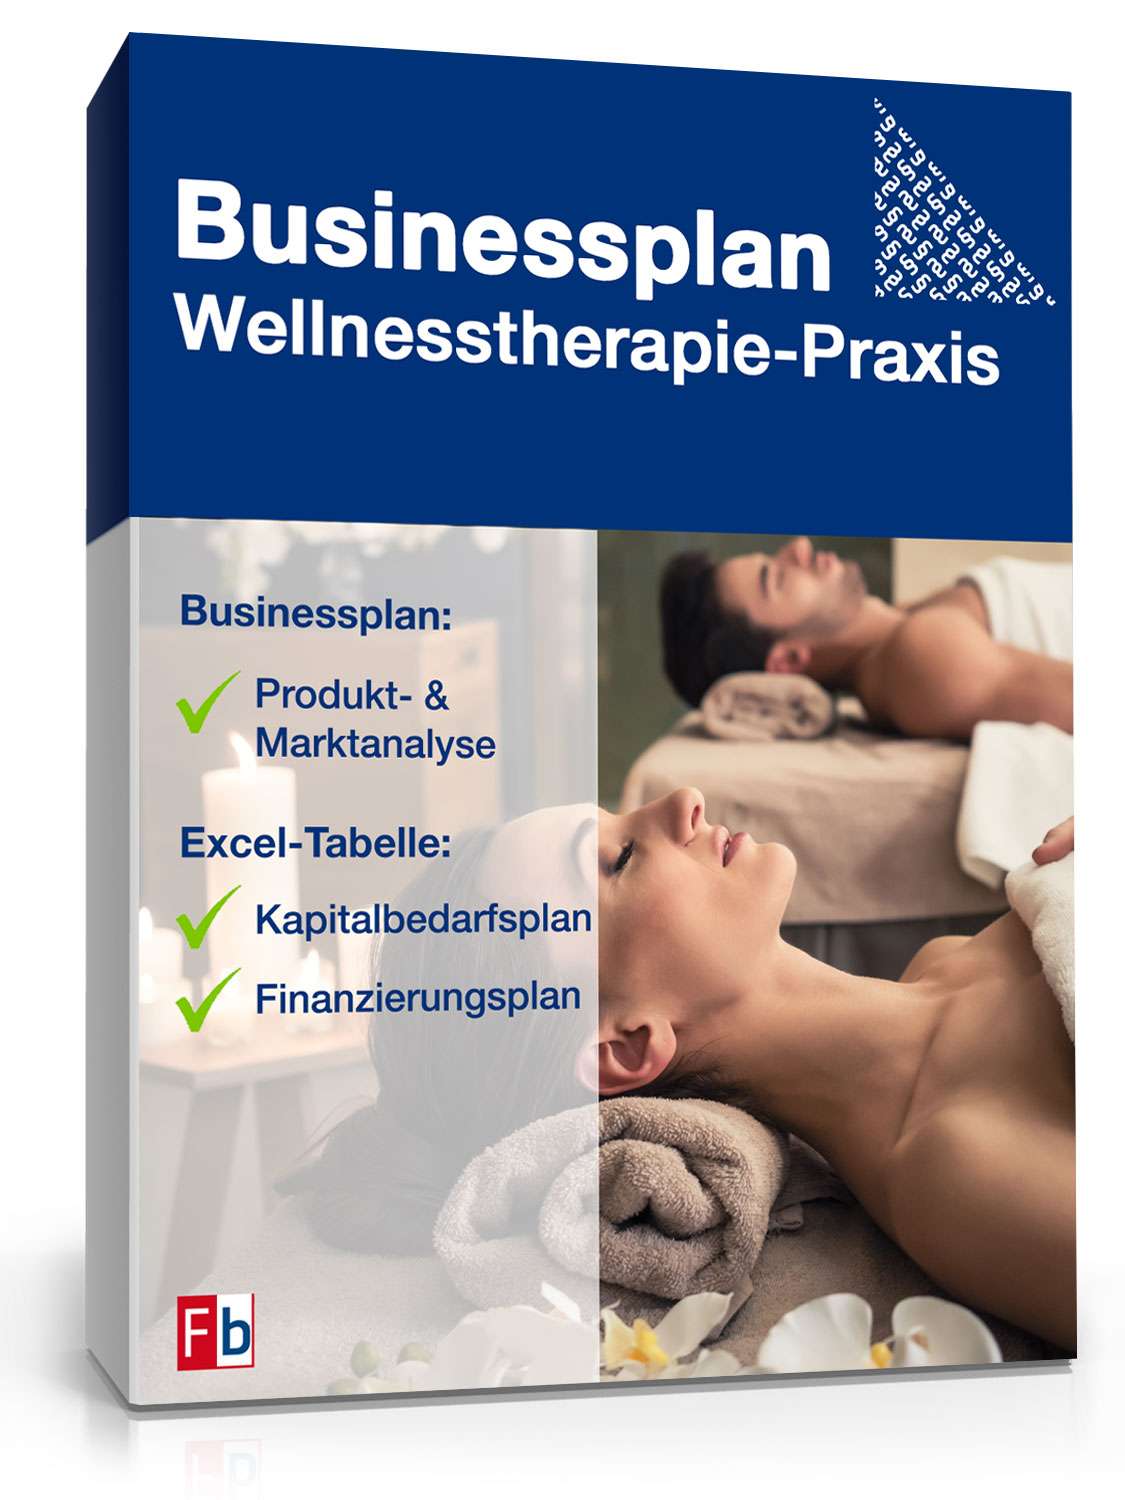 Hauptbild des Produkts: Businessplan Wellnesstherapie-Praxis